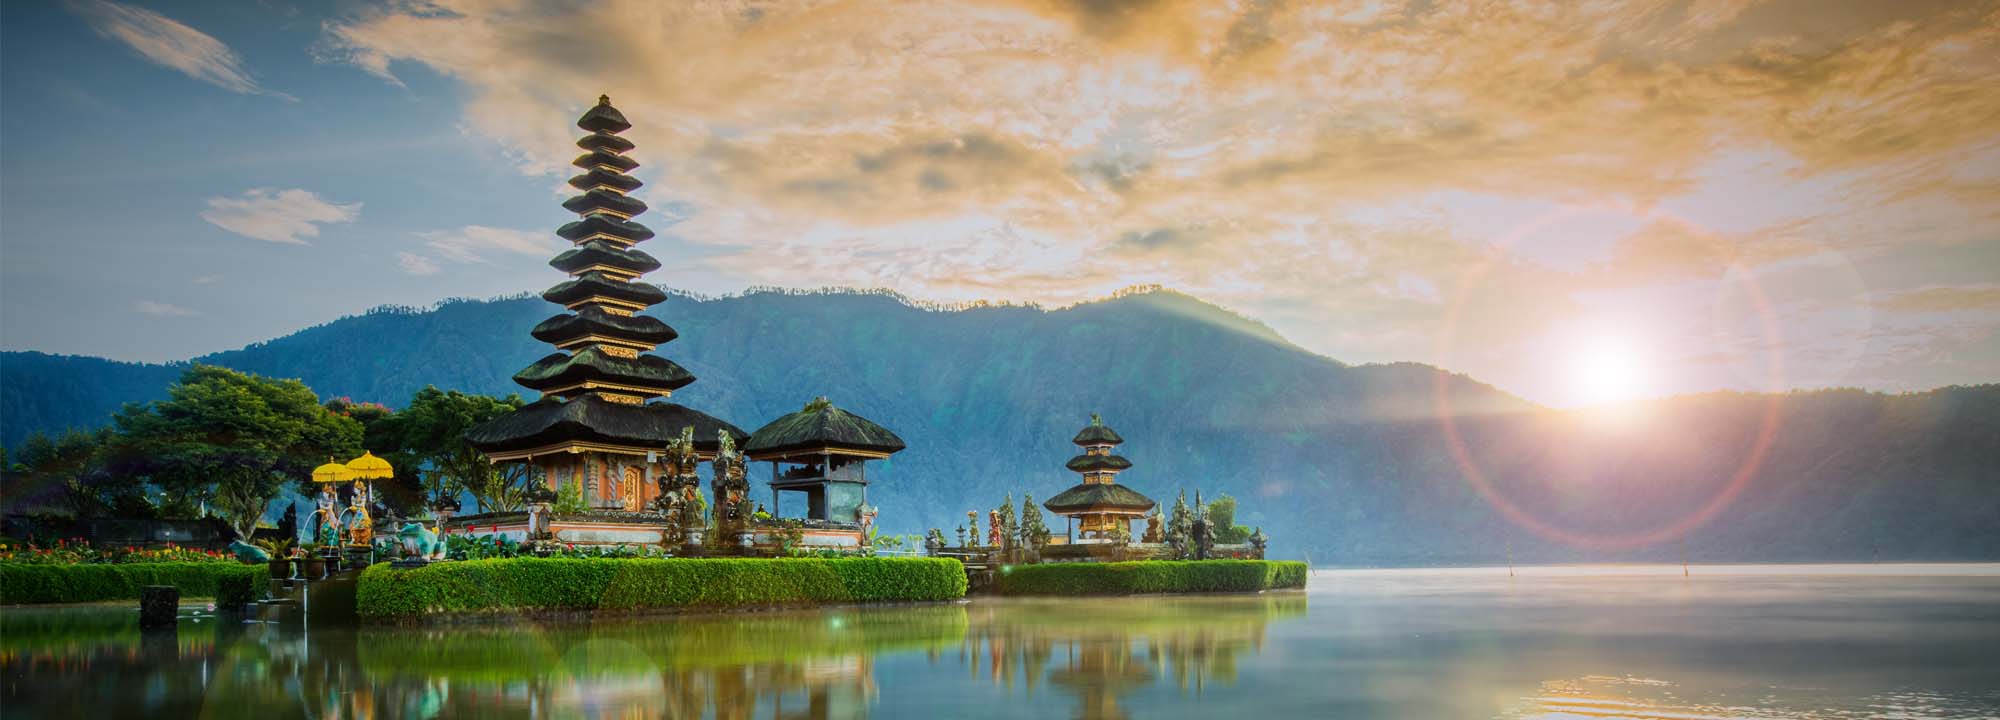 Chrámy na Bali